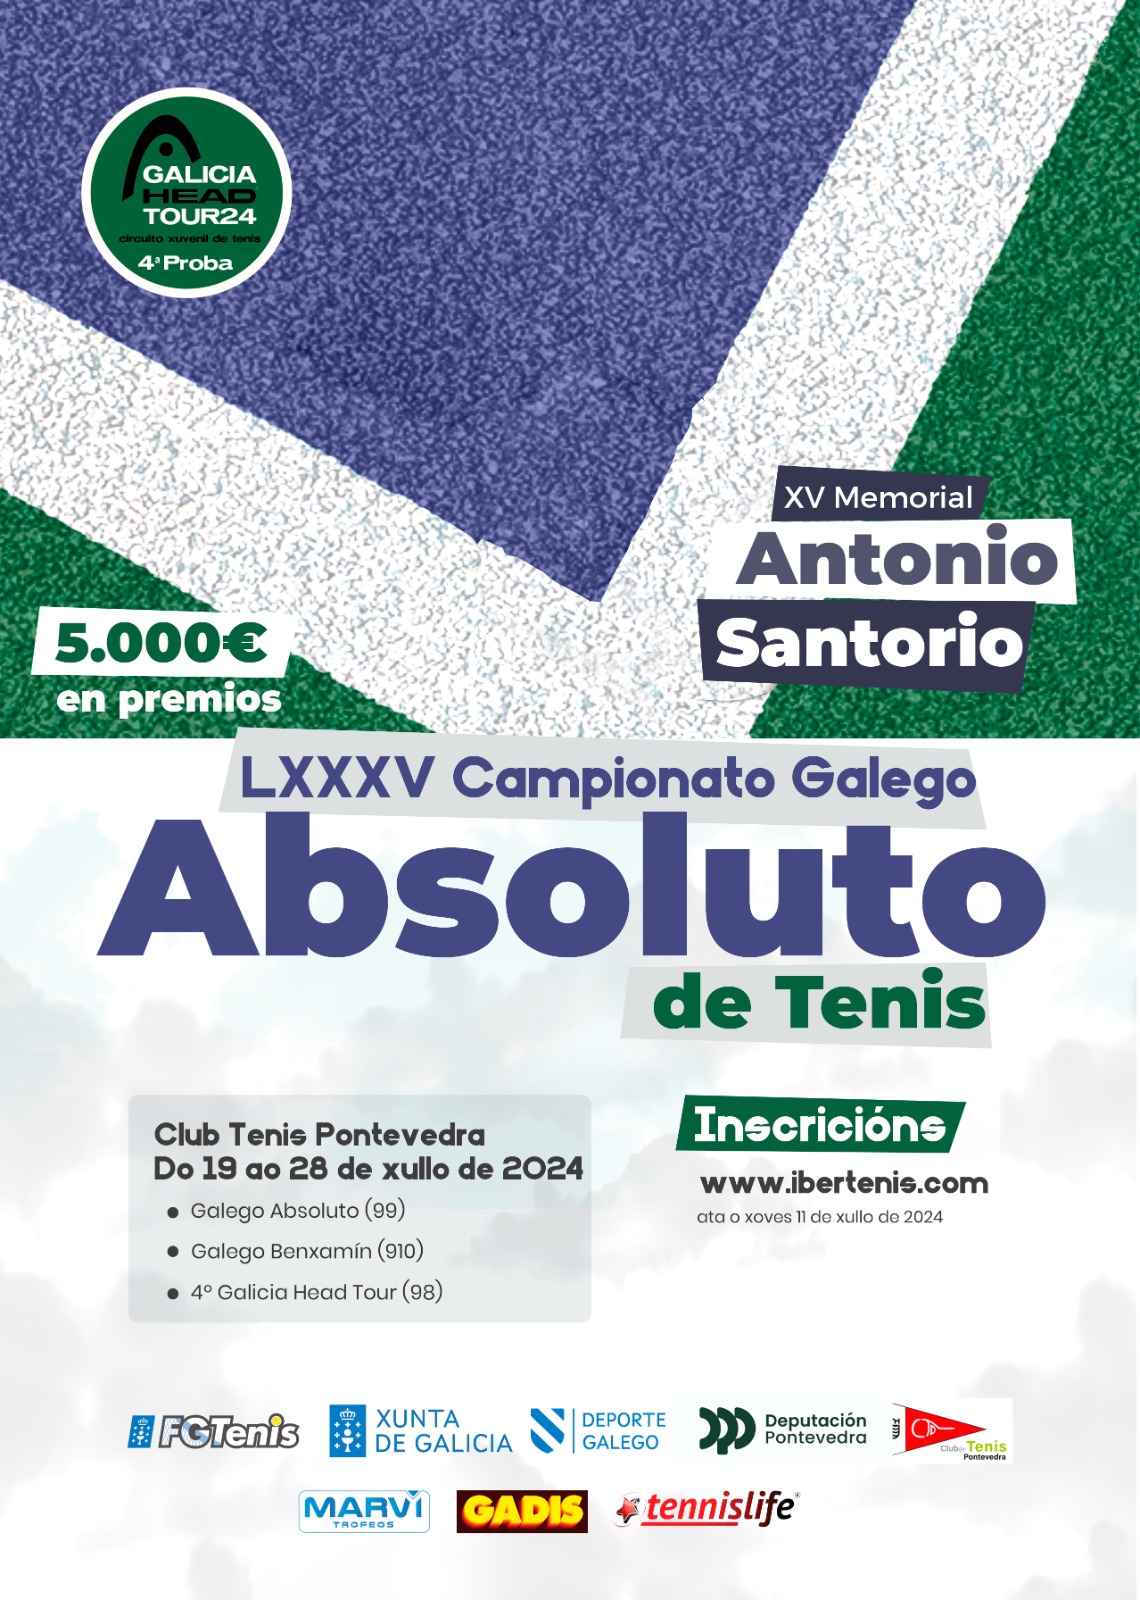 Cartel del Campeonato Gallego Absoluto - Benjamín y 4ª Prueba Head